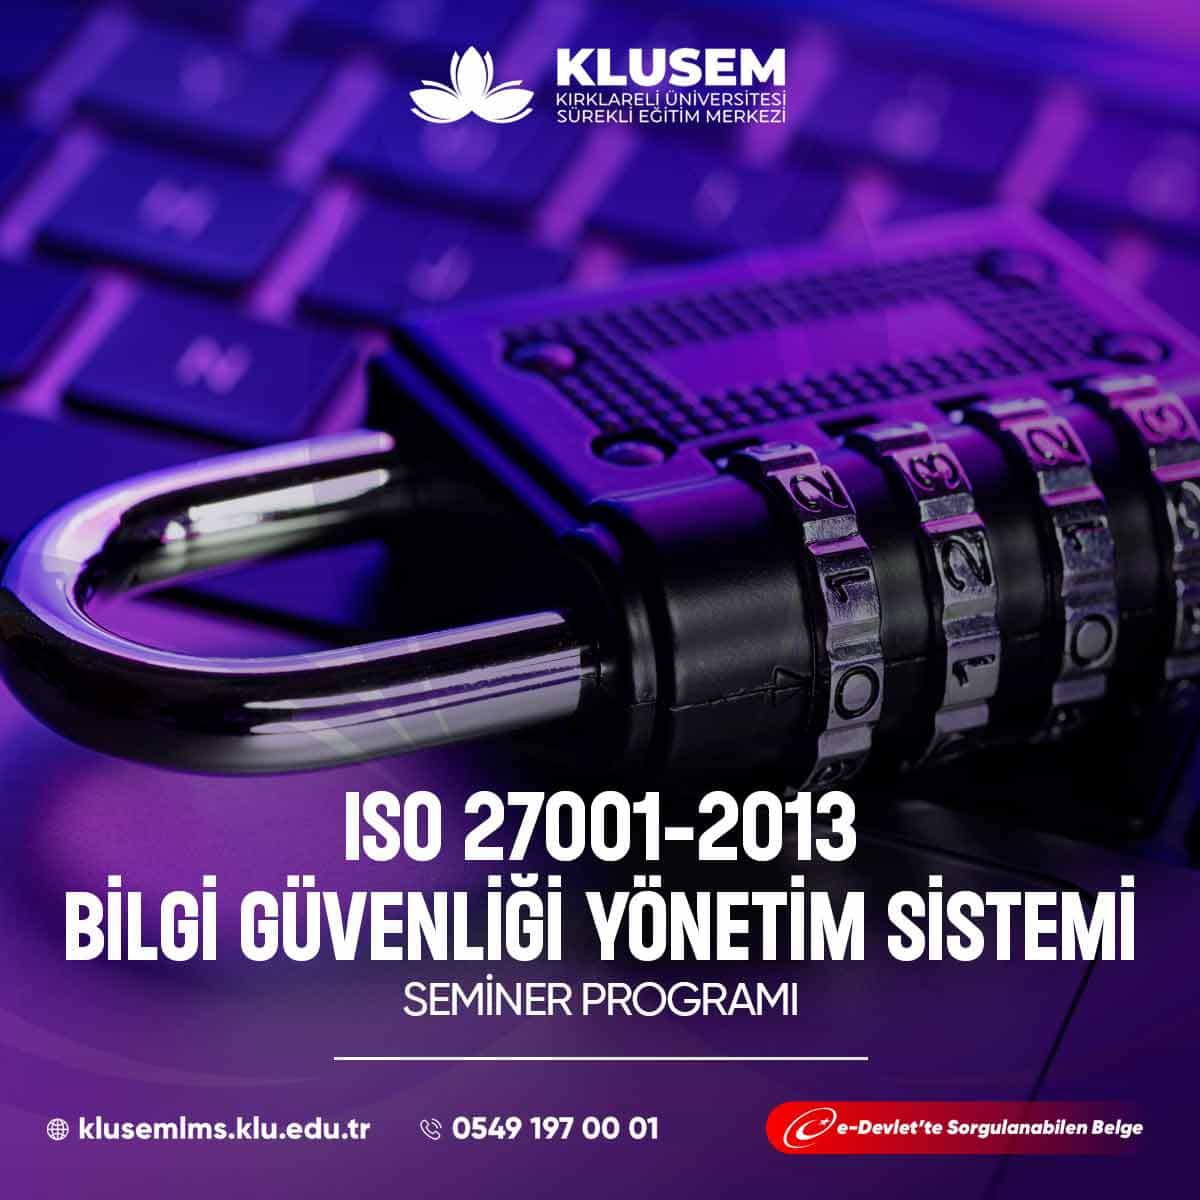 ISO 27001-2013 Bilgi Güvenliği Yönetim Sistemi, kuruluşların bilgi güvenliğini korumak ve yönetmek için uluslararası bir standarttır. 